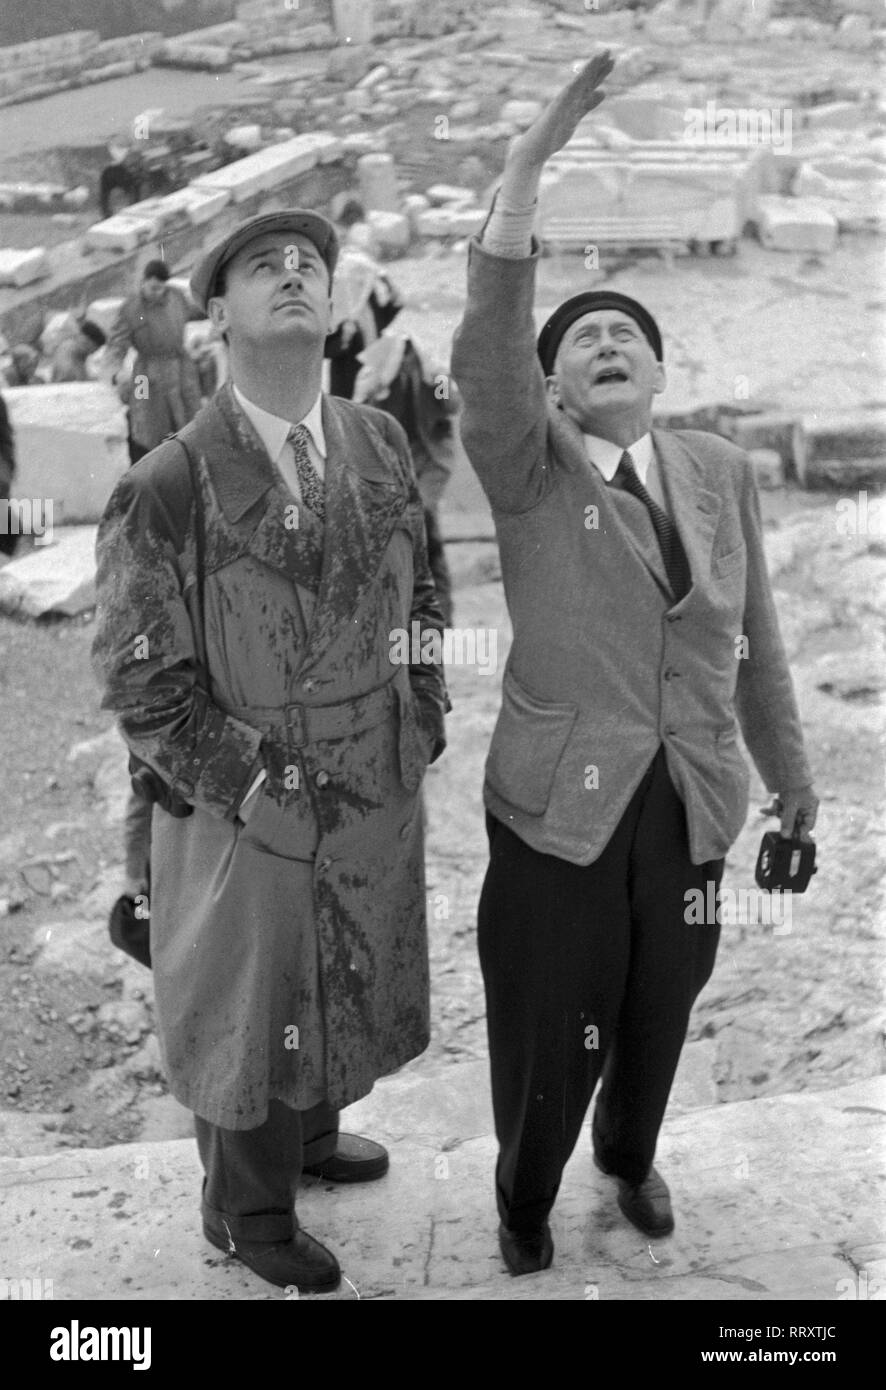 Greece - Männer bei einer Besichtigung in Athen, Griechenland, 1954. Men during a sightseeing tour at Athens, Greece 1954. Stock Photo